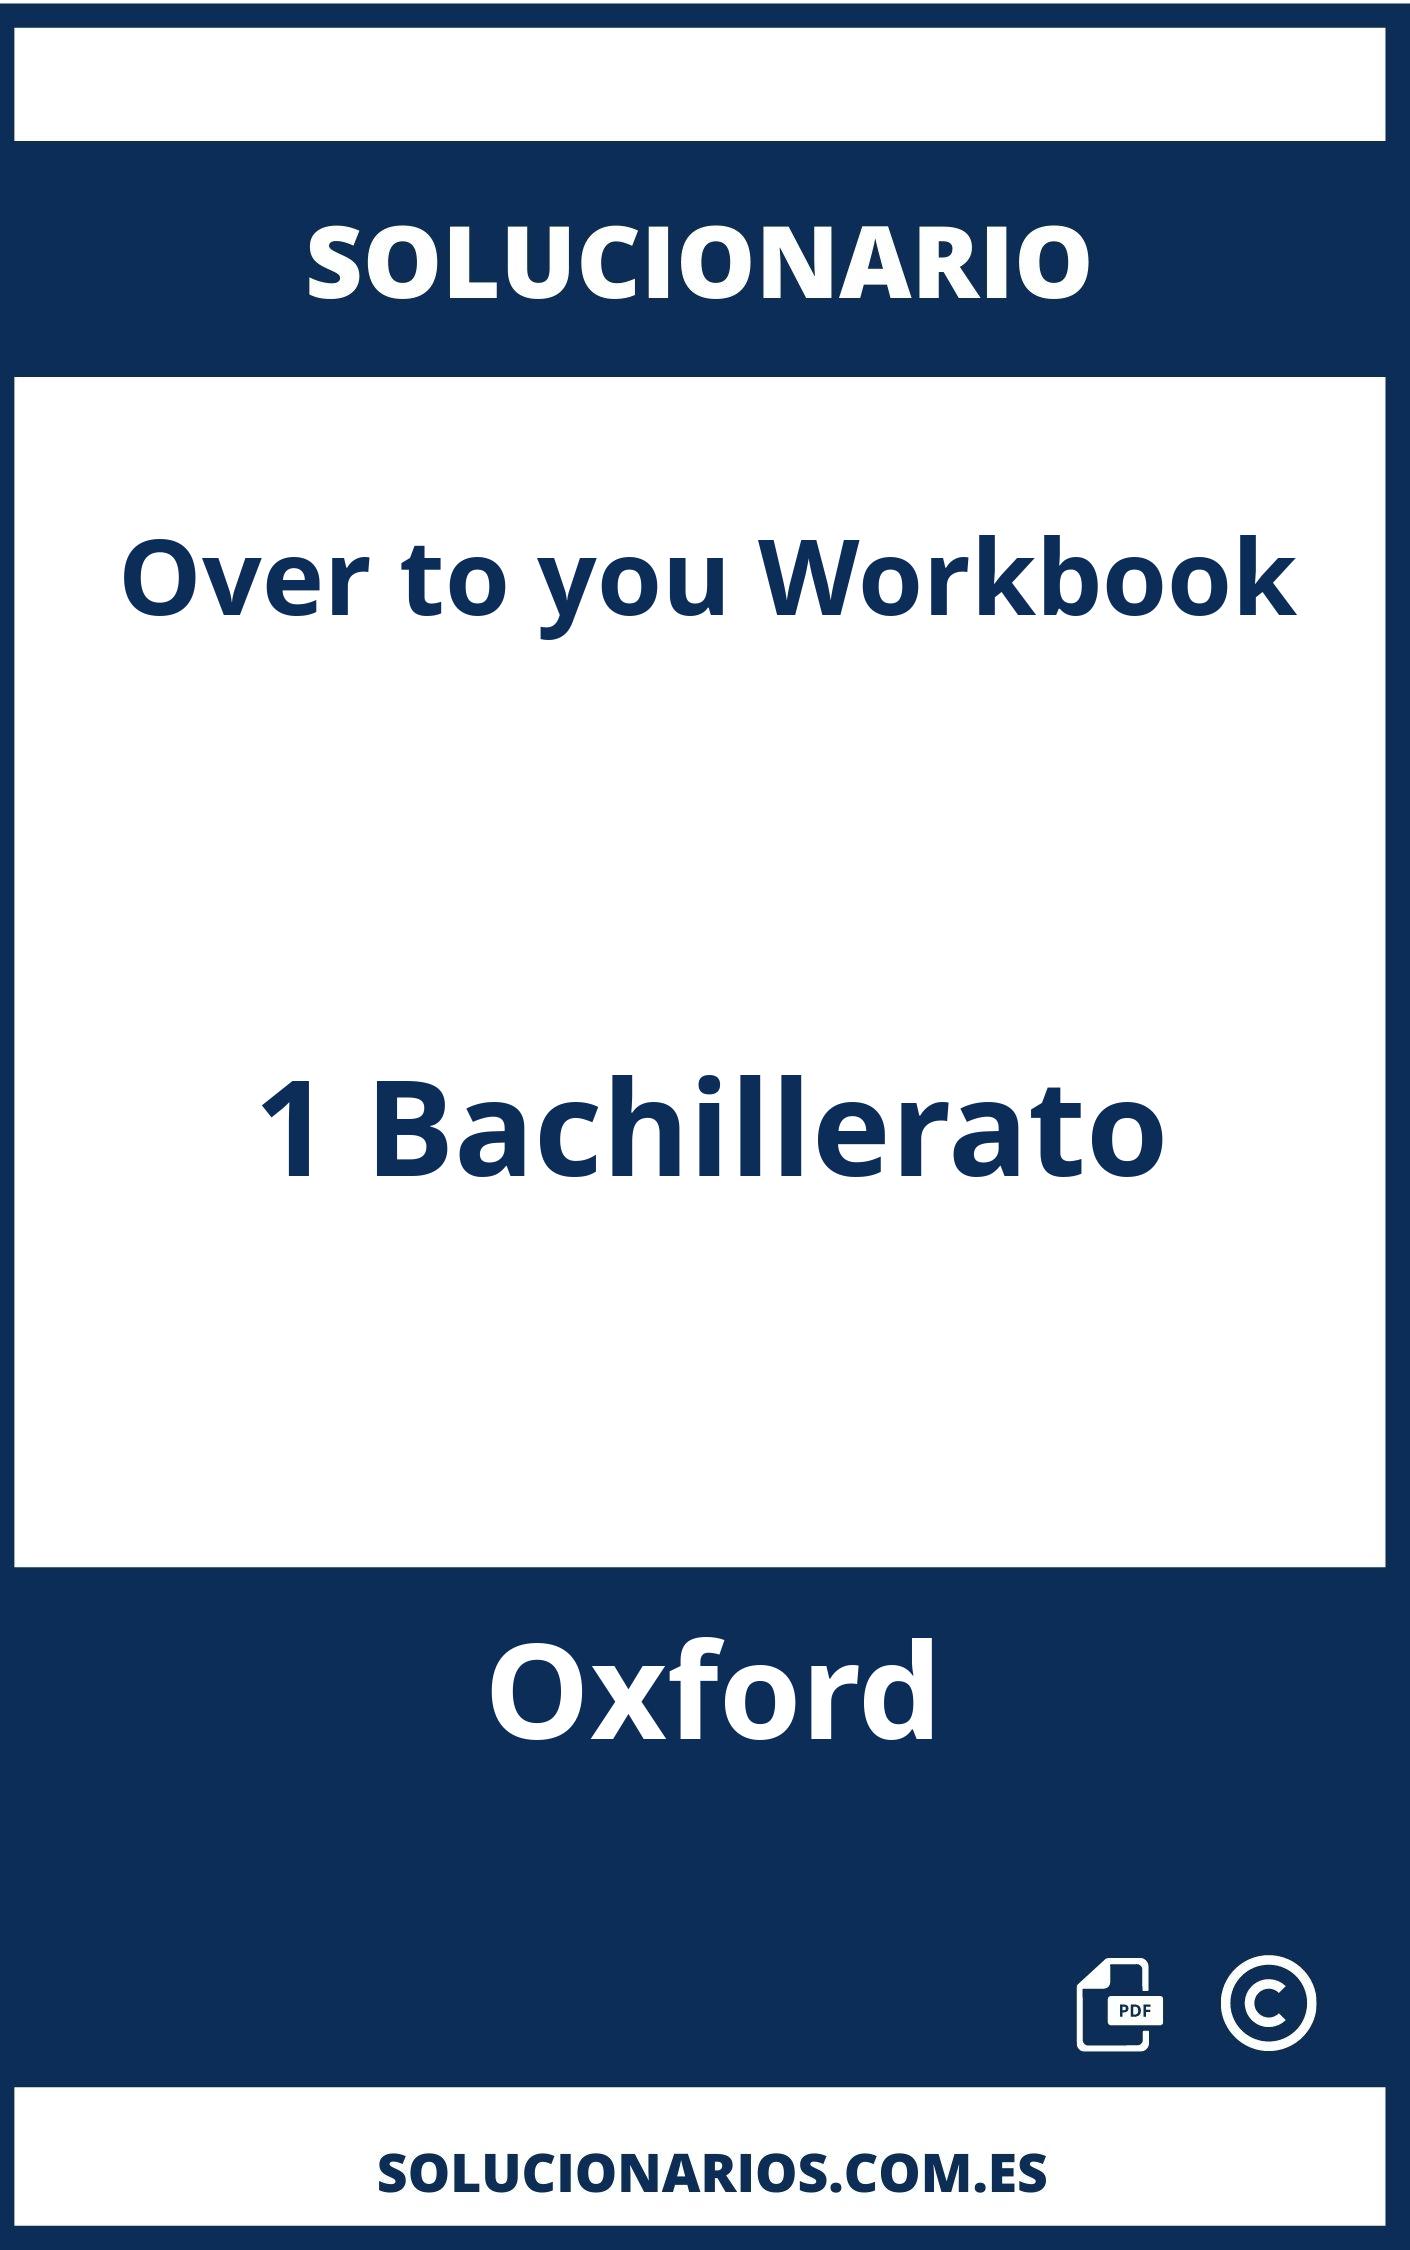 Solucionario Over to you Workbook 1 Bachillerato Oxford